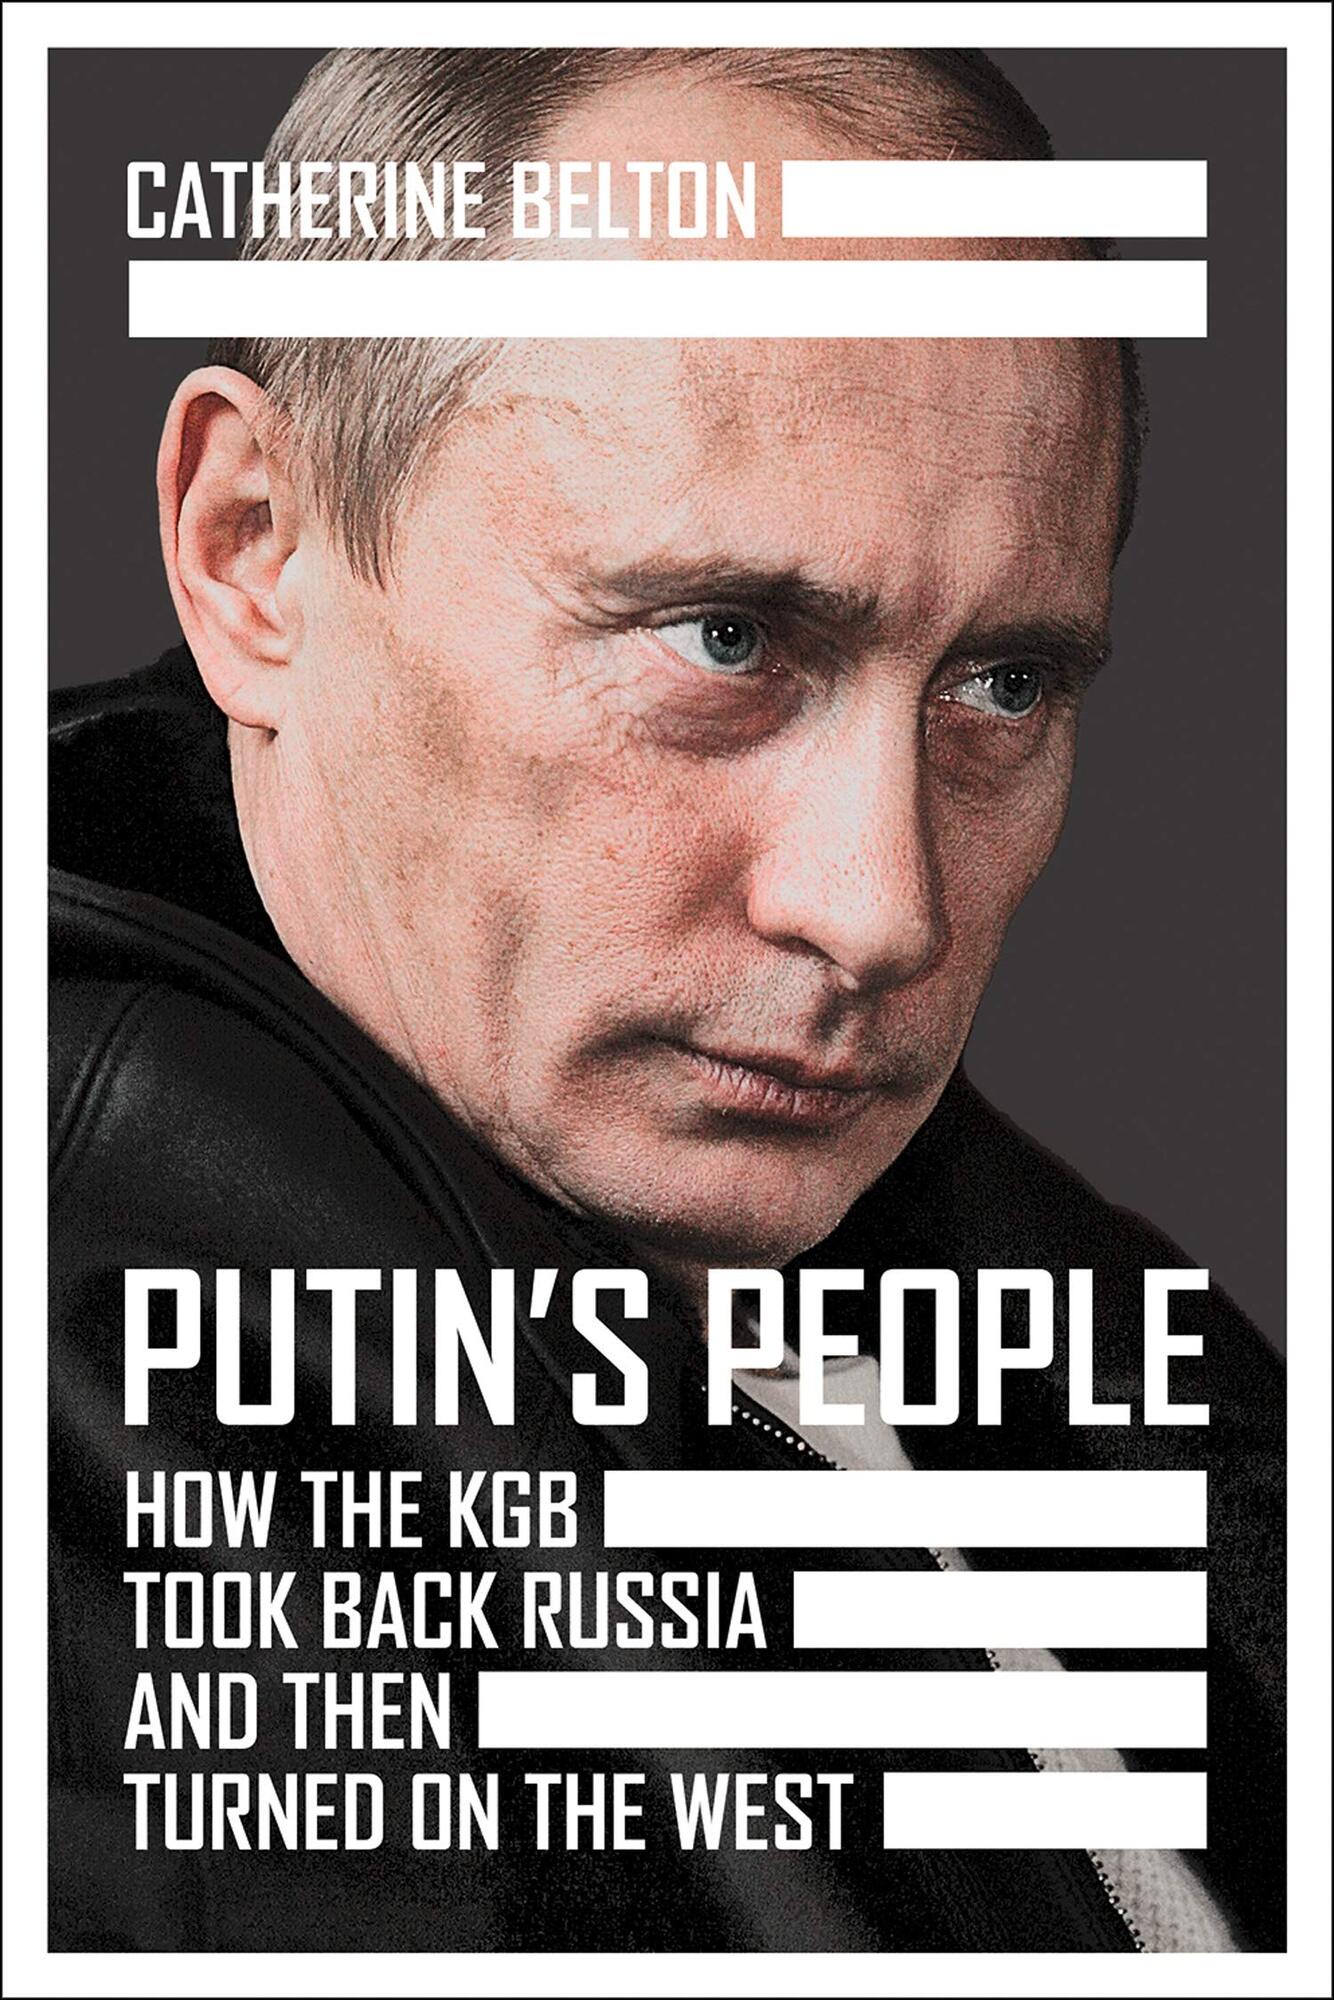 Обложка новой книги о Путине